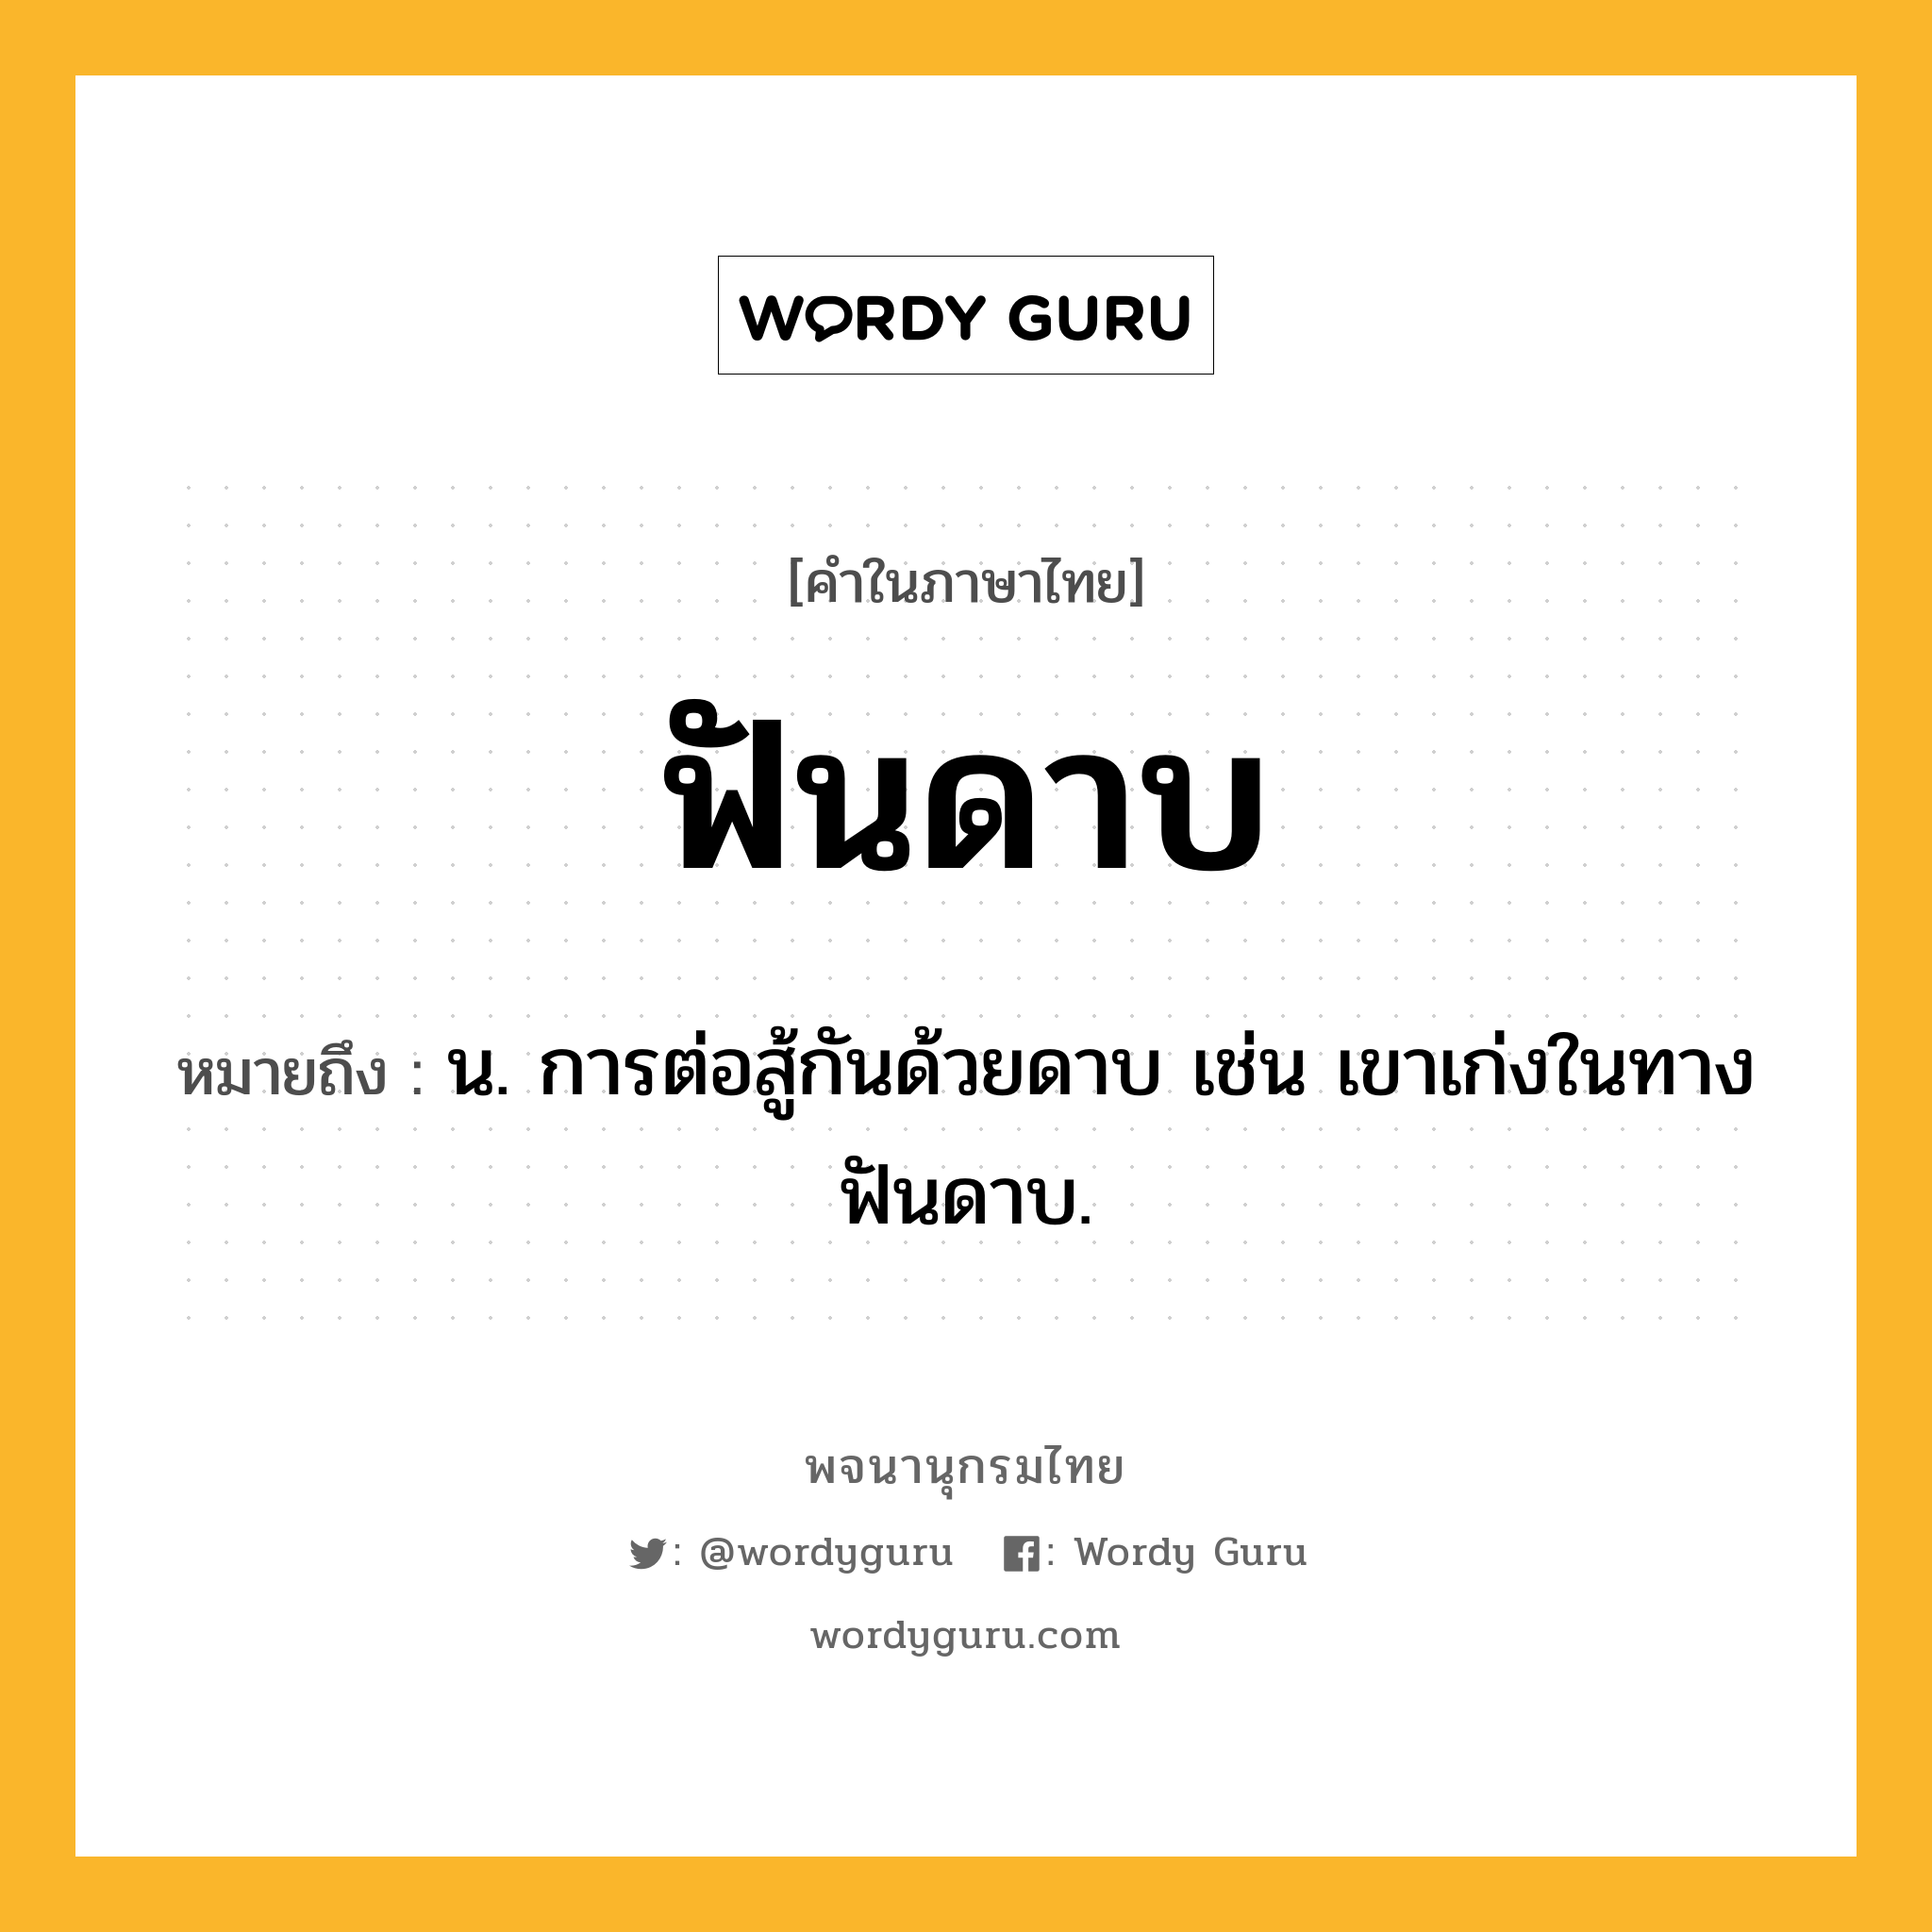 ฟันดาบ หมายถึงอะไร?, คำในภาษาไทย ฟันดาบ หมายถึง น. การต่อสู้กันด้วยดาบ เช่น เขาเก่งในทางฟันดาบ.